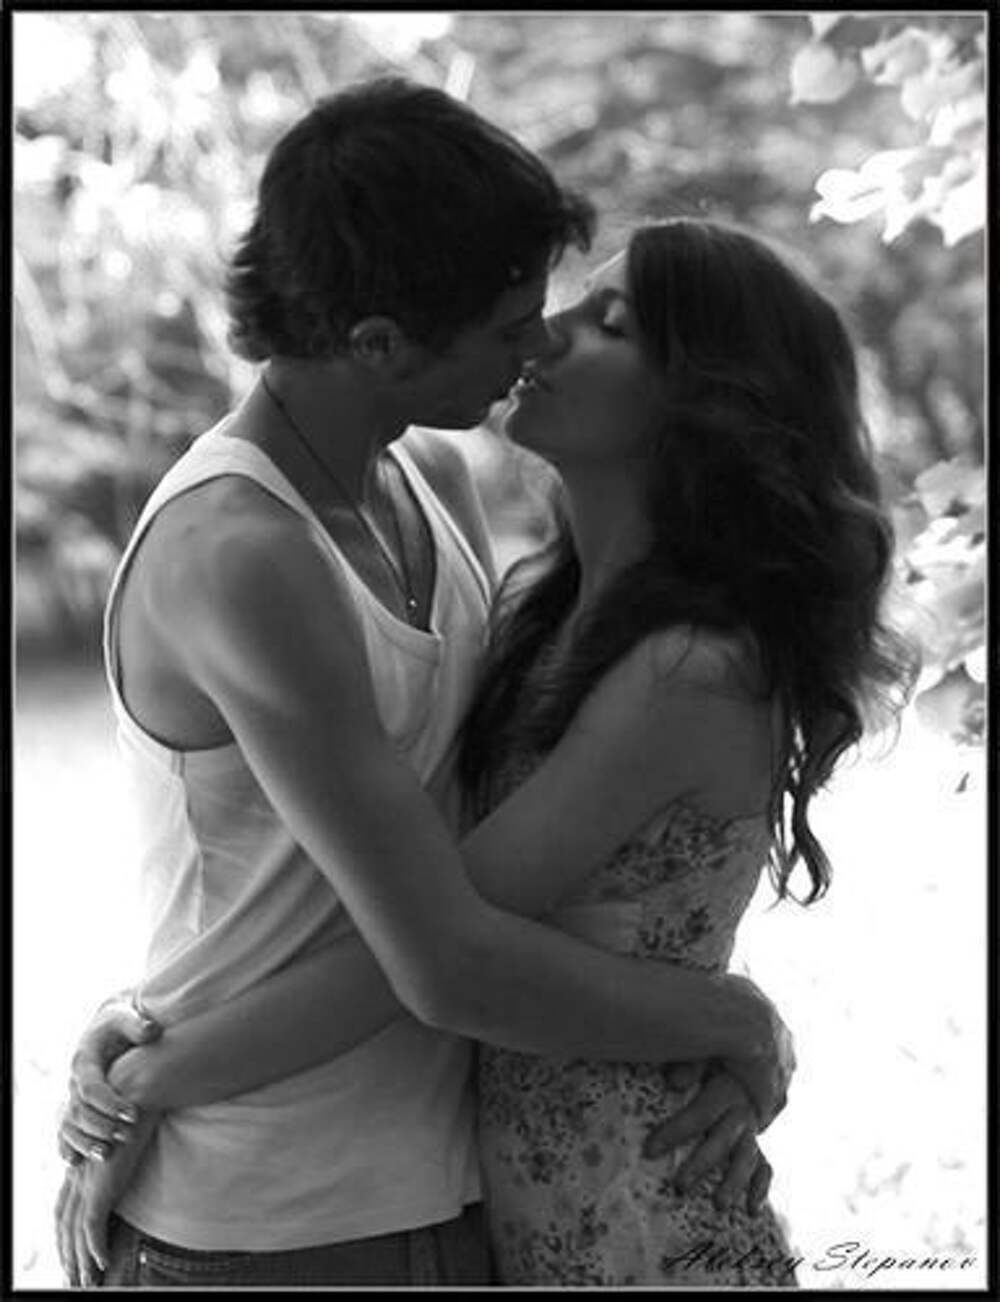 Тихо поцелую чувство тебе передам. Обнять и поцеловать. Страстный поцелуй. Обнимаются и целуются. Поцелуй картинки красивые.